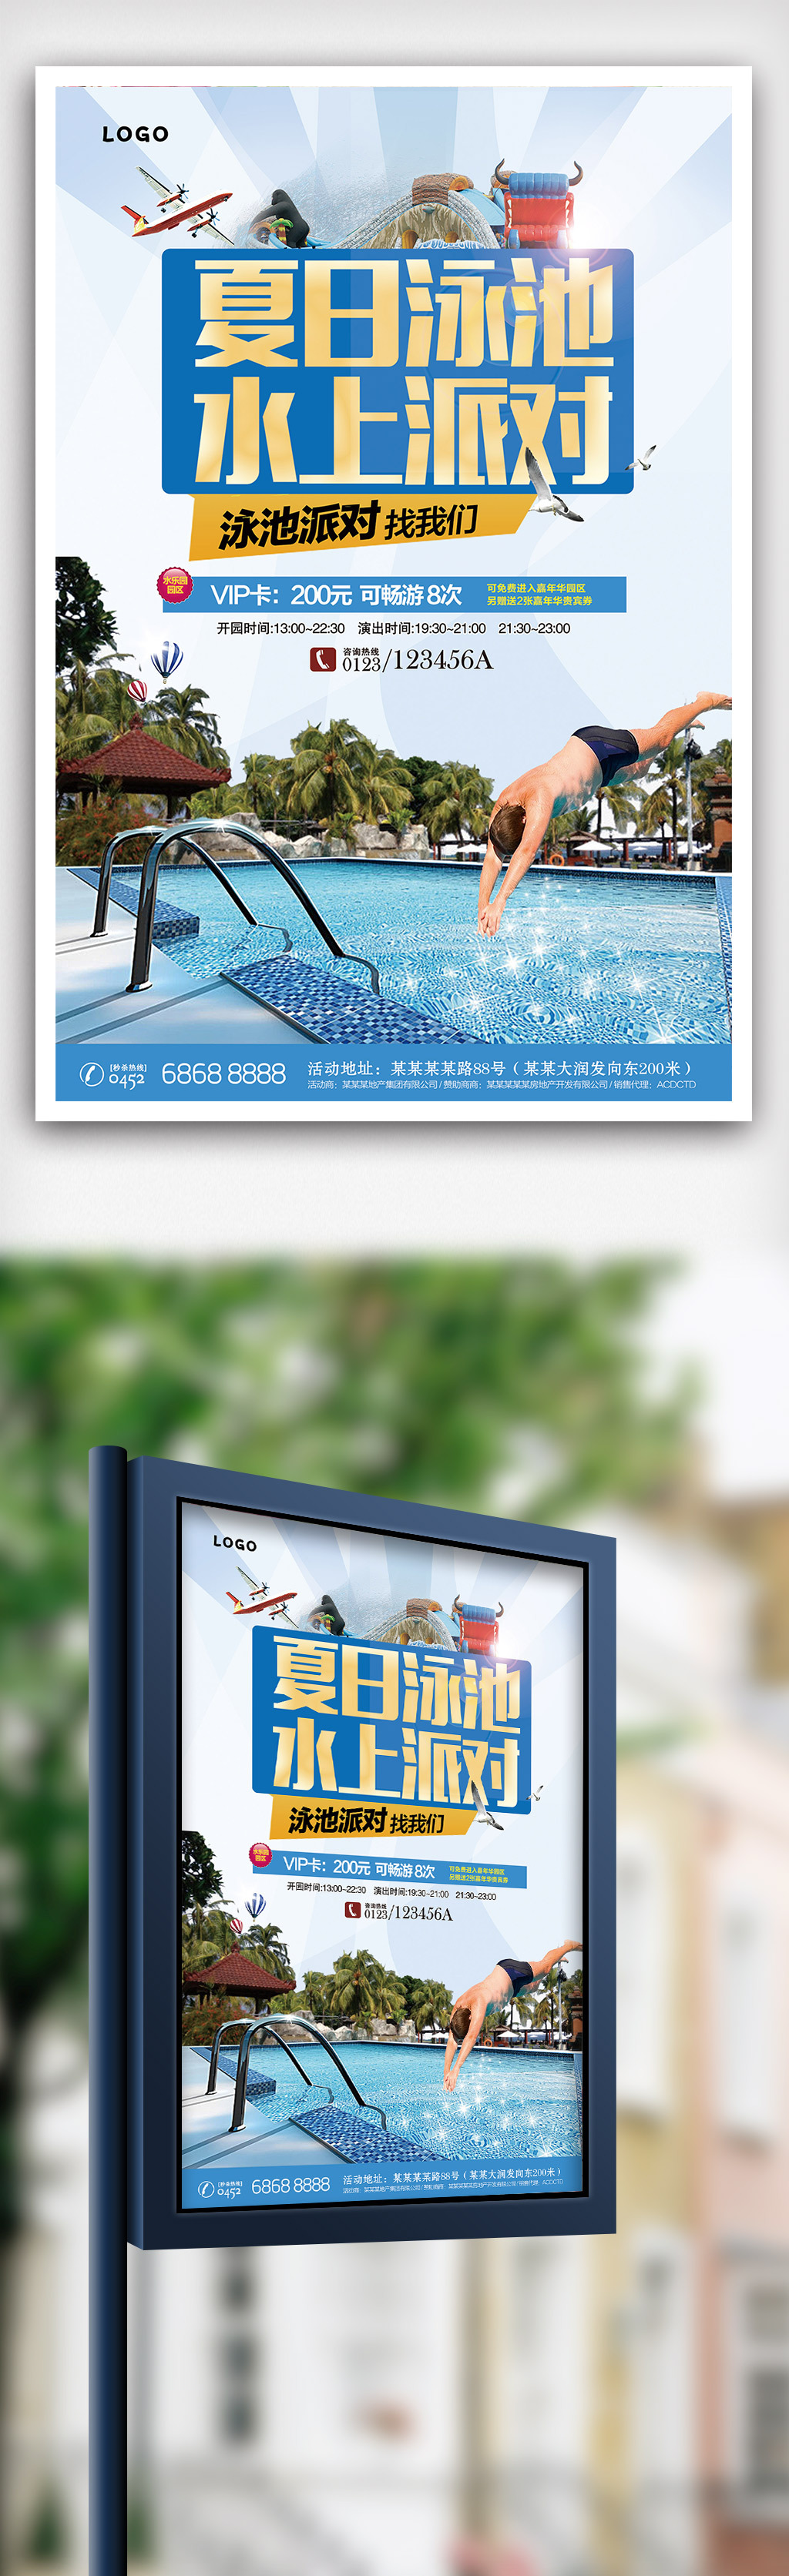 夏日泳池水上派对海报图片